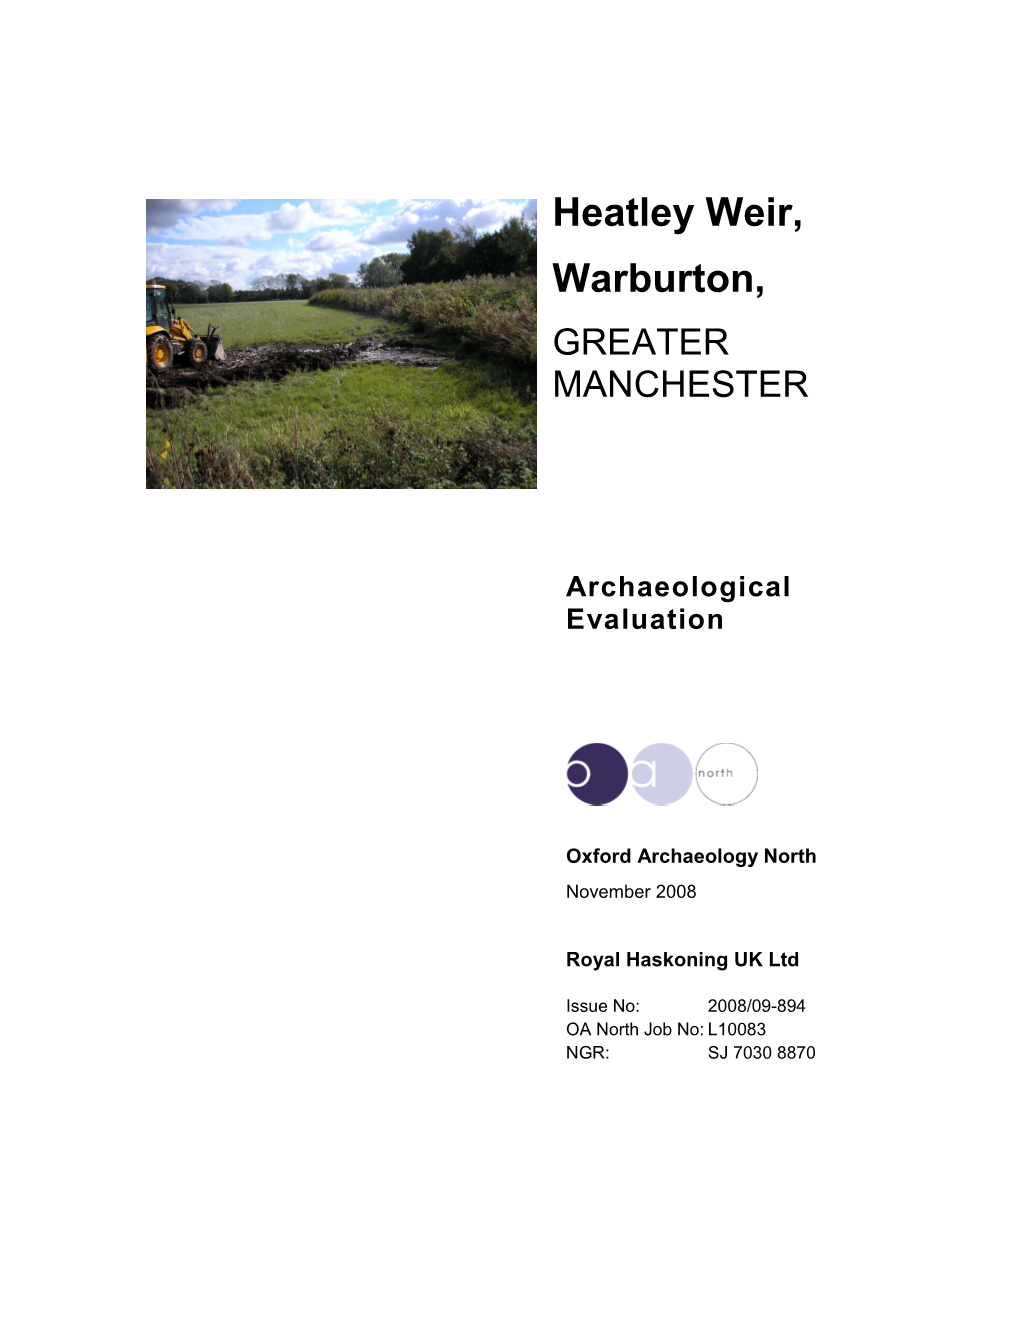 Heatley Weir Archaeological Evaluation